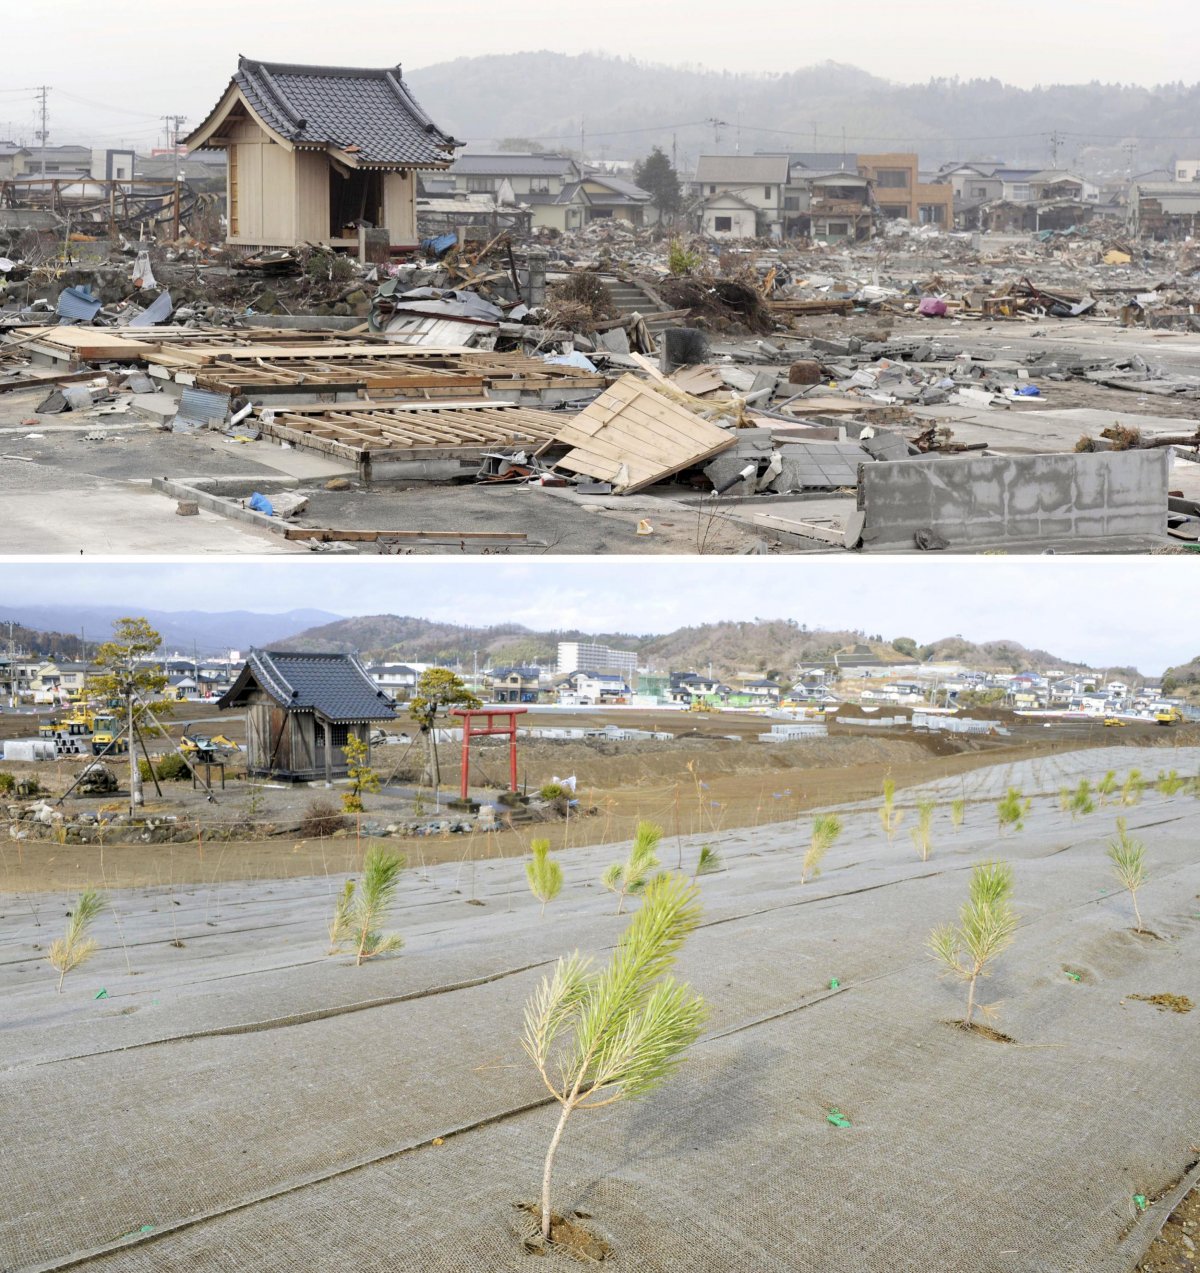 در سال 2013، نیروگاه برق توکیو گزارش کرد که روزانه حدود 300 تن آب آلوده به رادیوکتیو به اقیانوس آرام نشت می کند. 